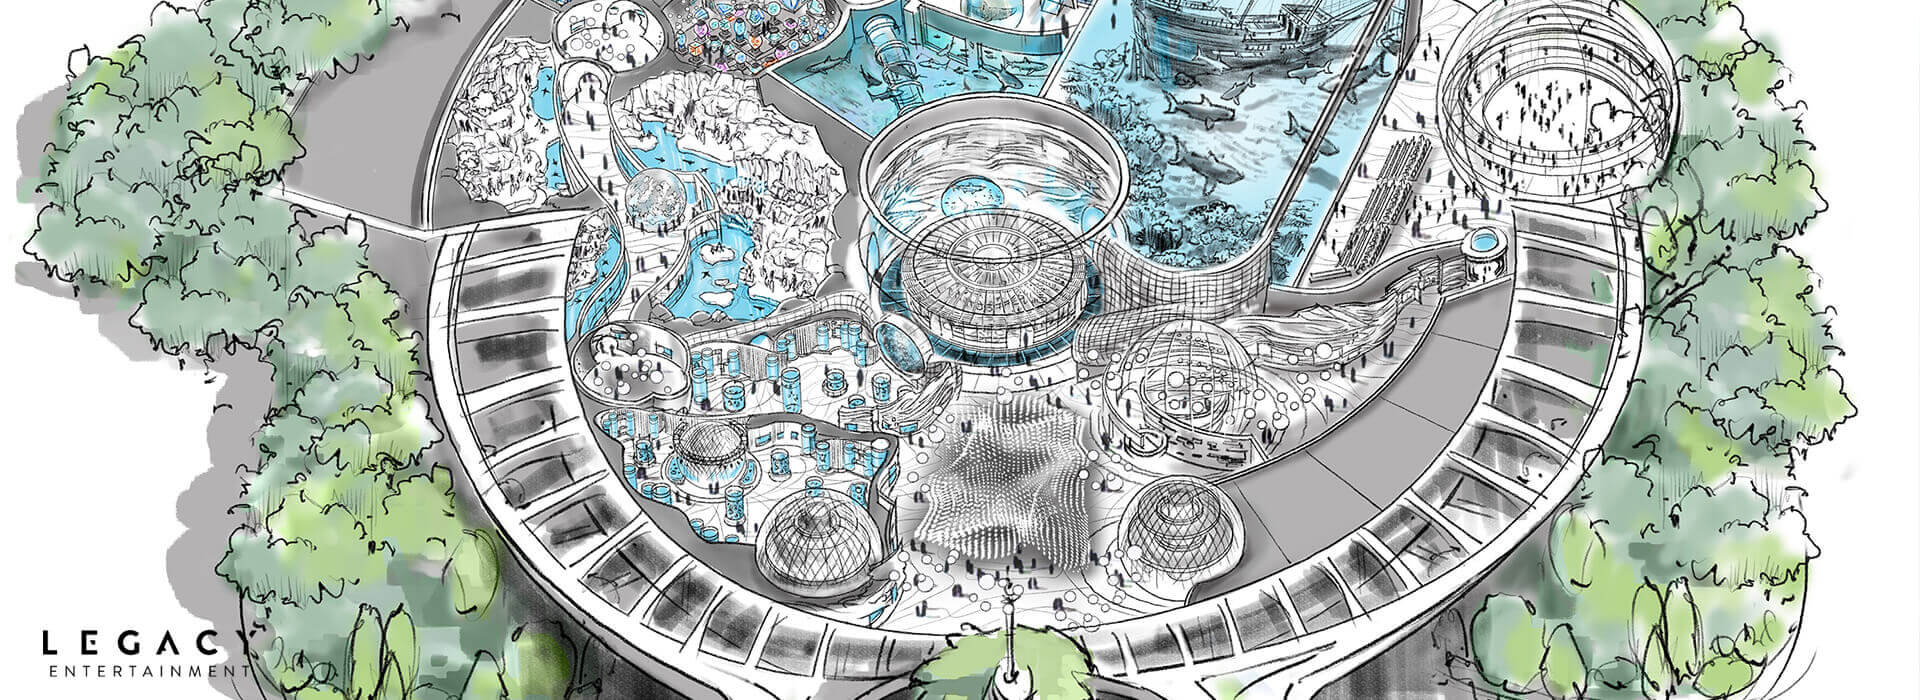 VinWonders_Theme_Park_Aquarium_Design_Interior_Legacy_Entertainment_1